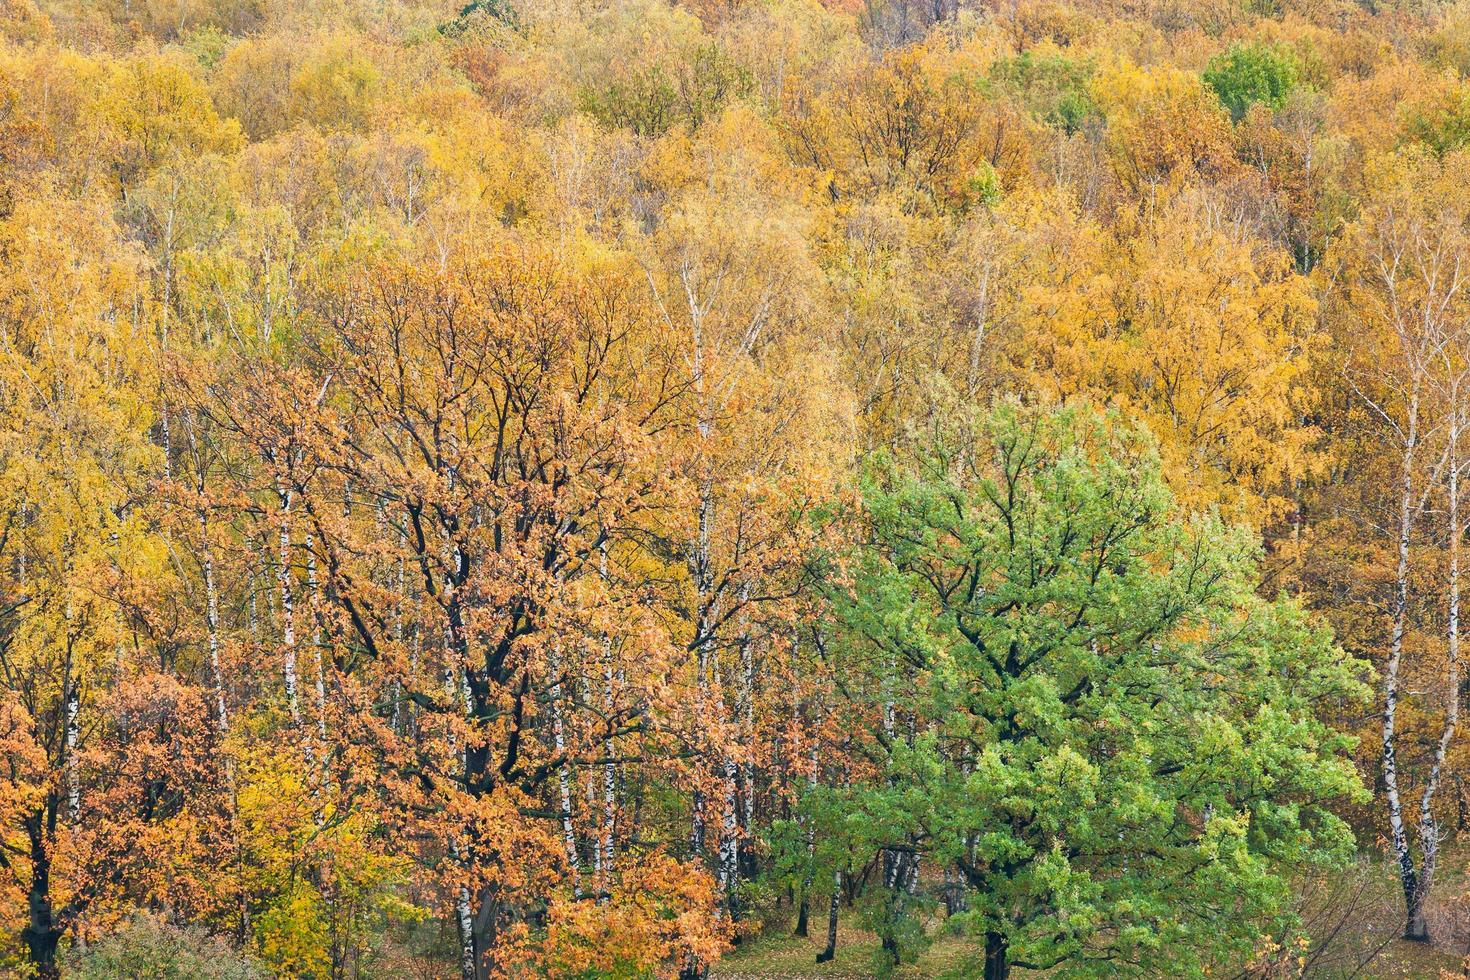 floresta de outono colorida foto